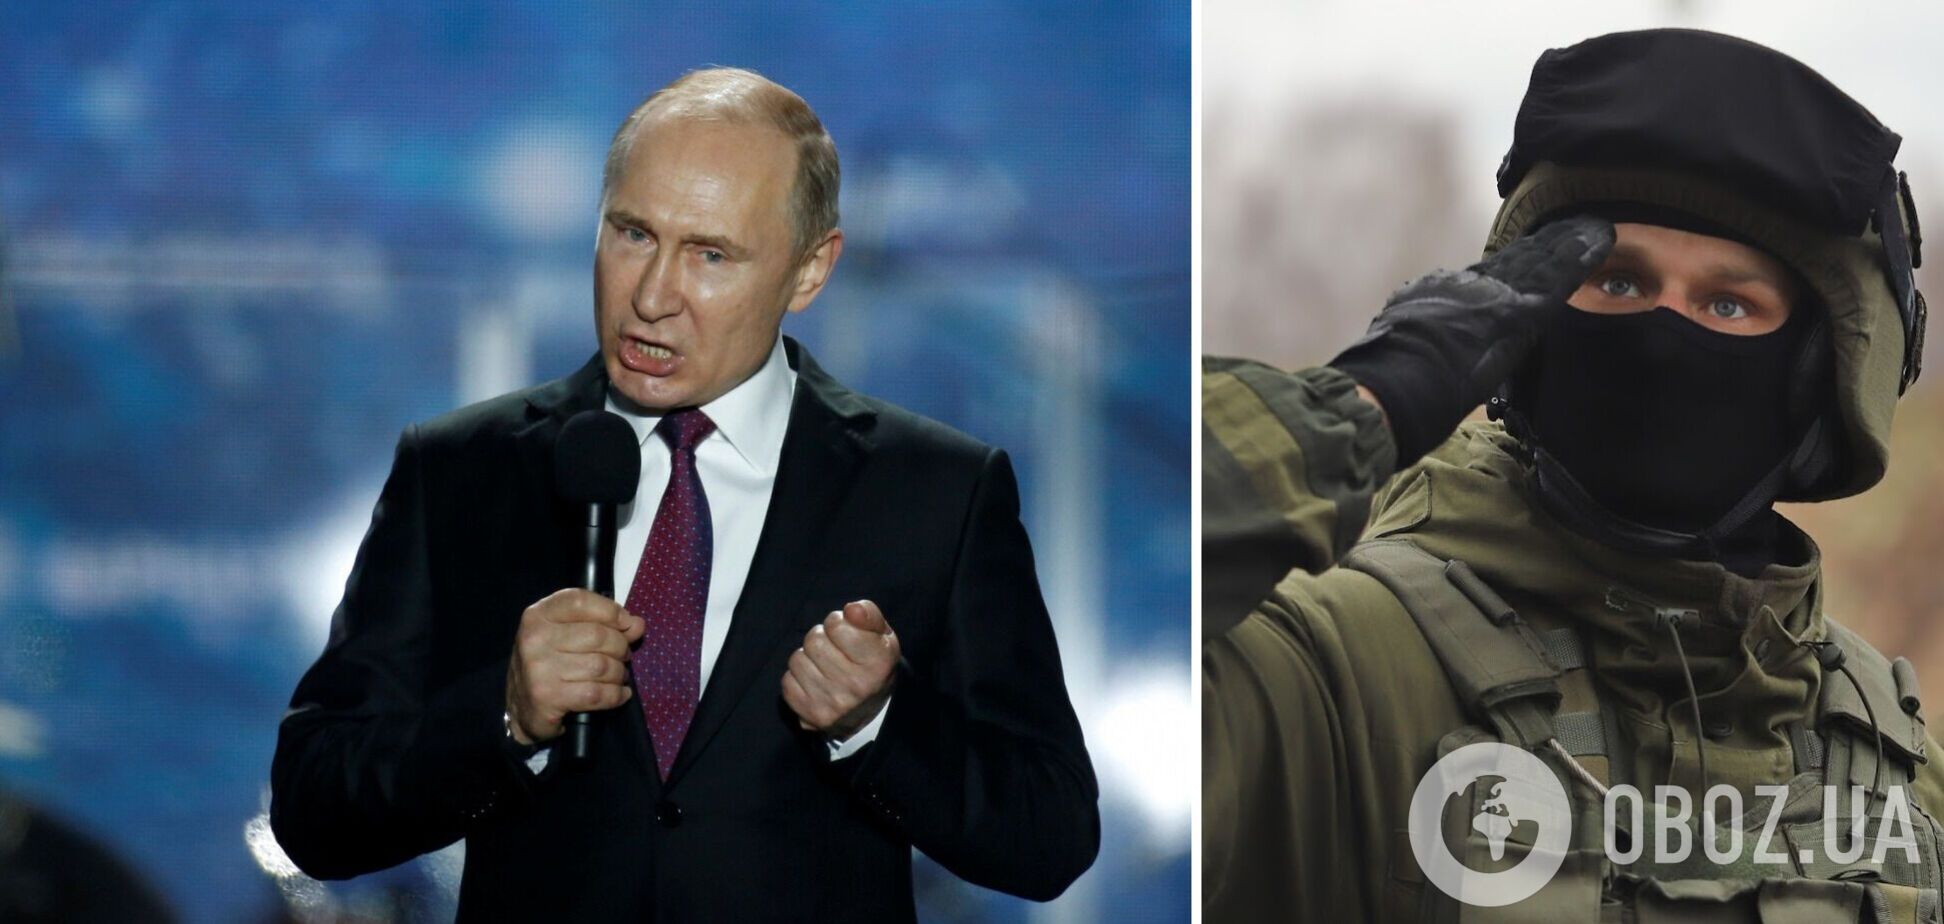 Путин на фоне затянувшейся войны собирается усилить преследования оппозиционеров